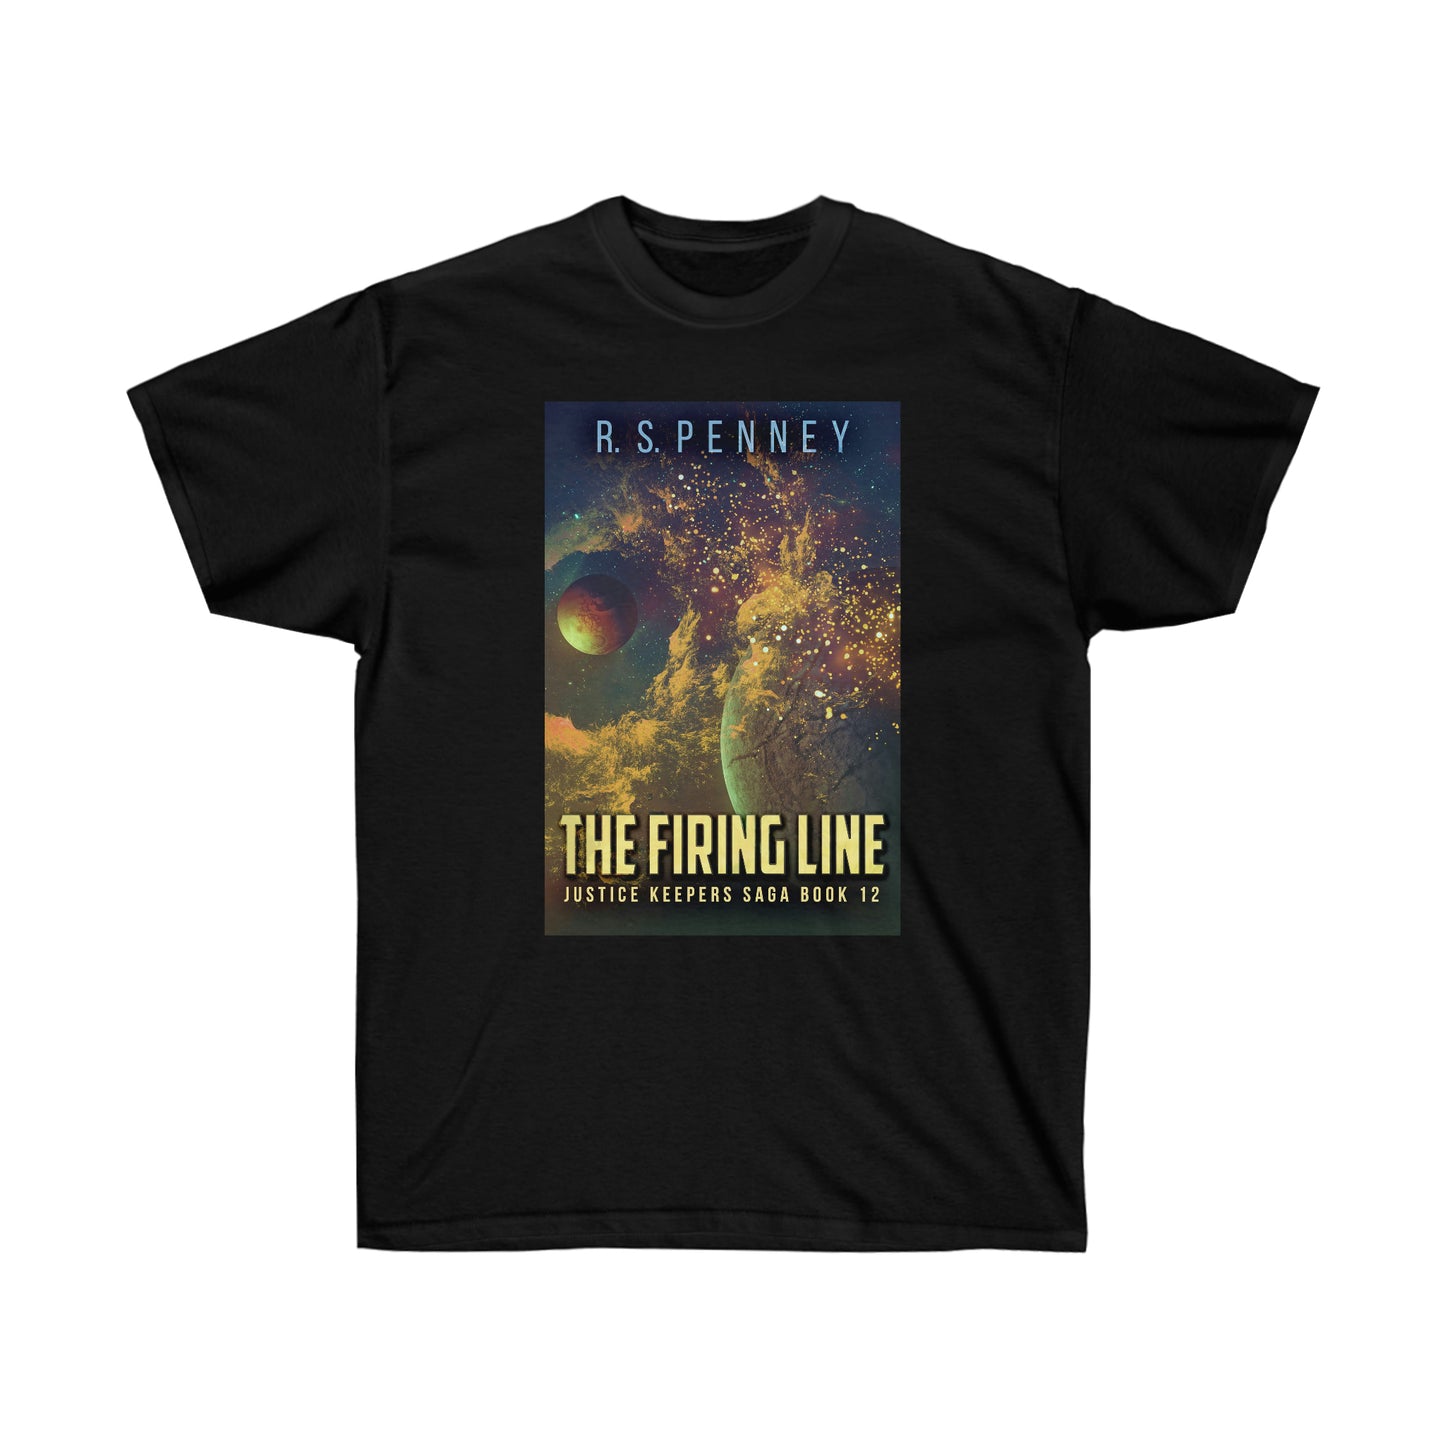 The Firing Line - Unisex T-Shirt